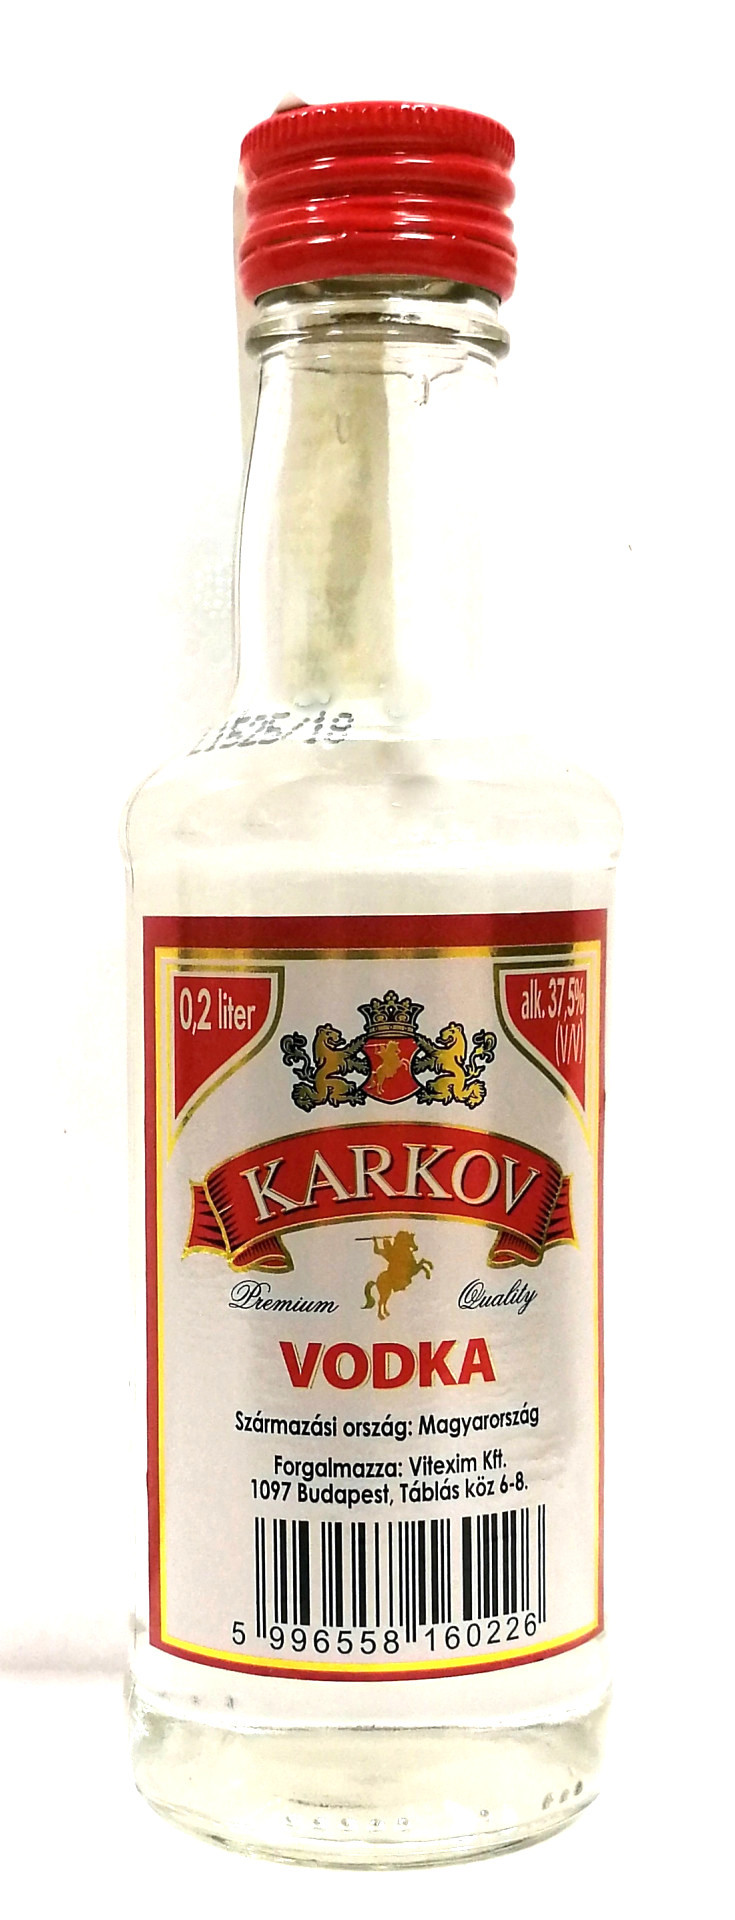 Karkov Vodka 0.2l